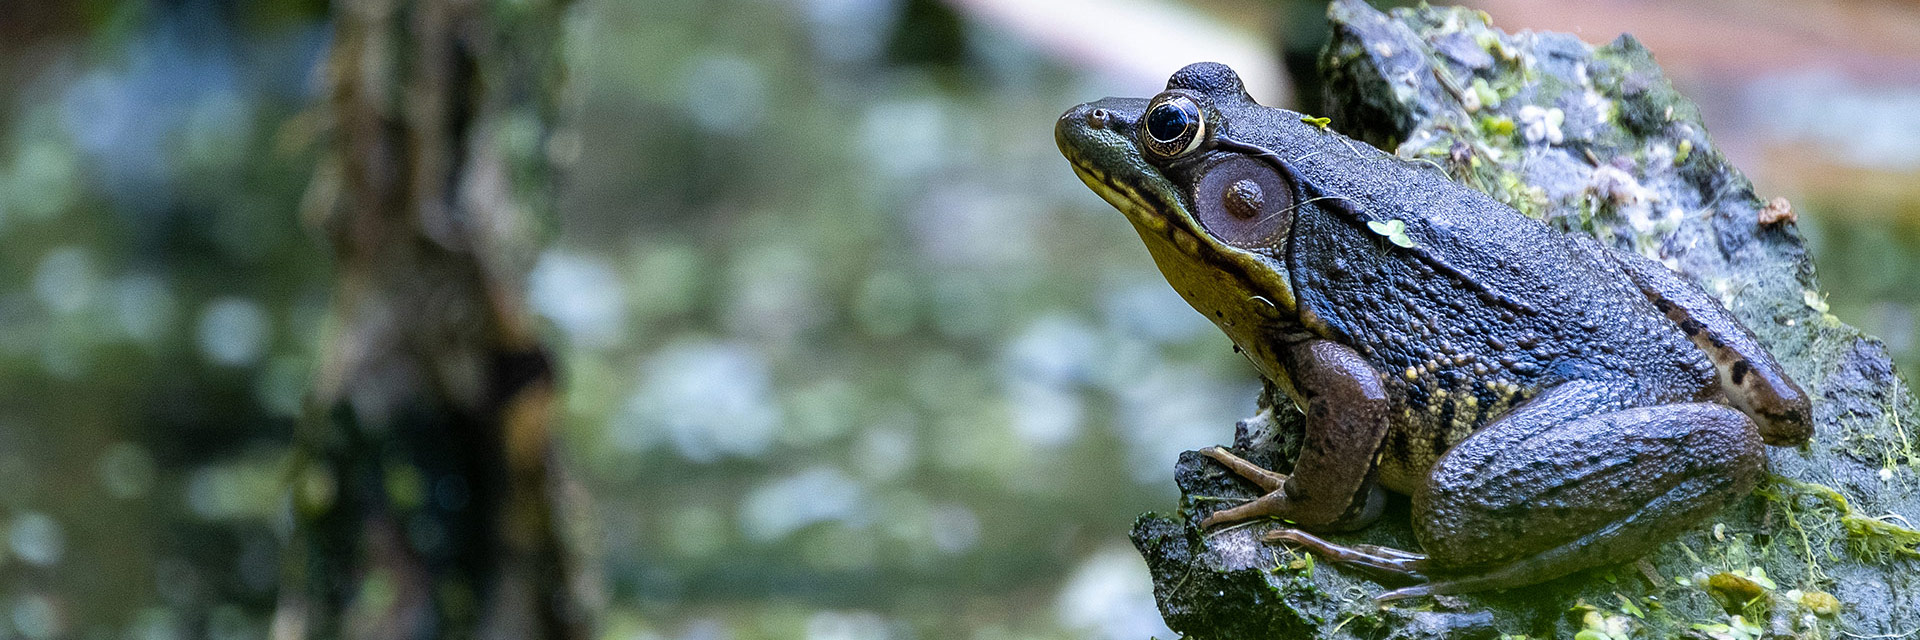 Frog in Rock Creek Park